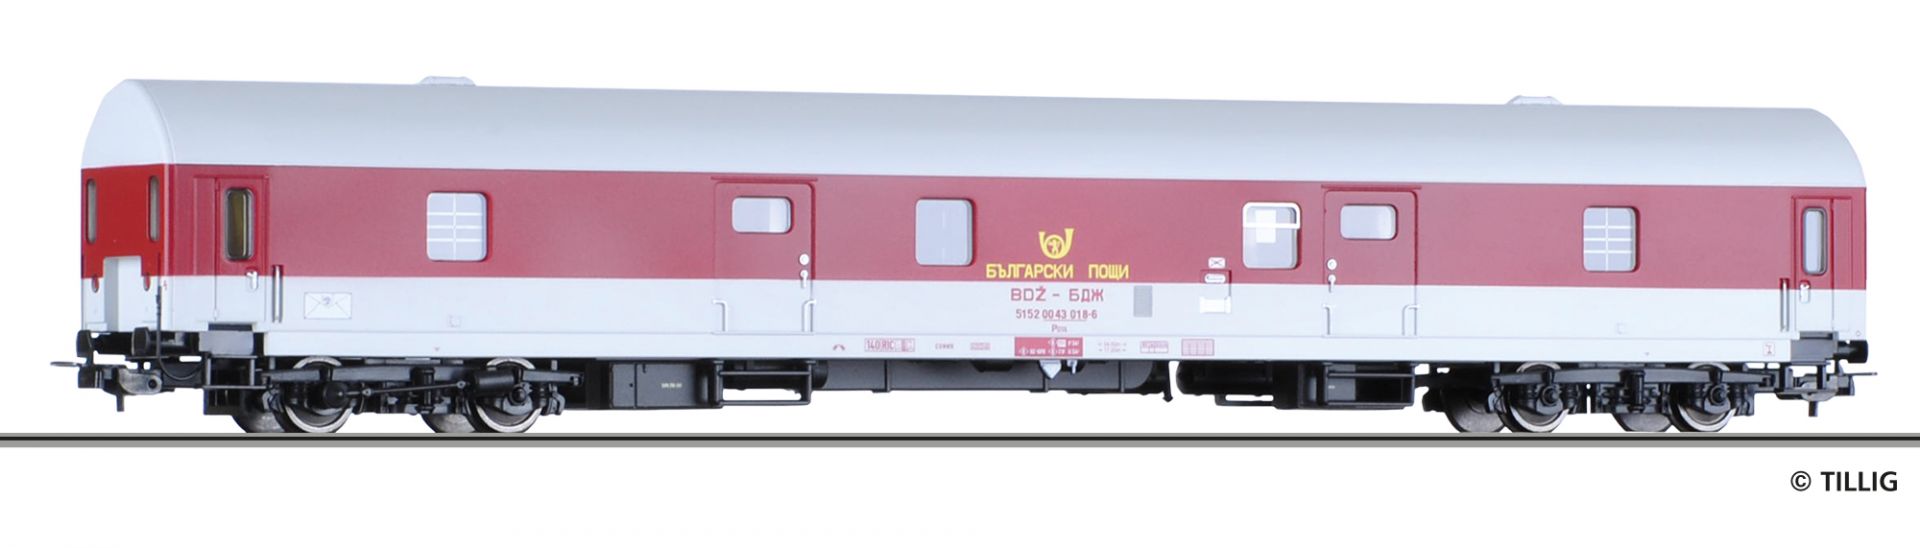 74922 | Bahnpostwagen Bulgarische Post -werksseitig ausverkauft-